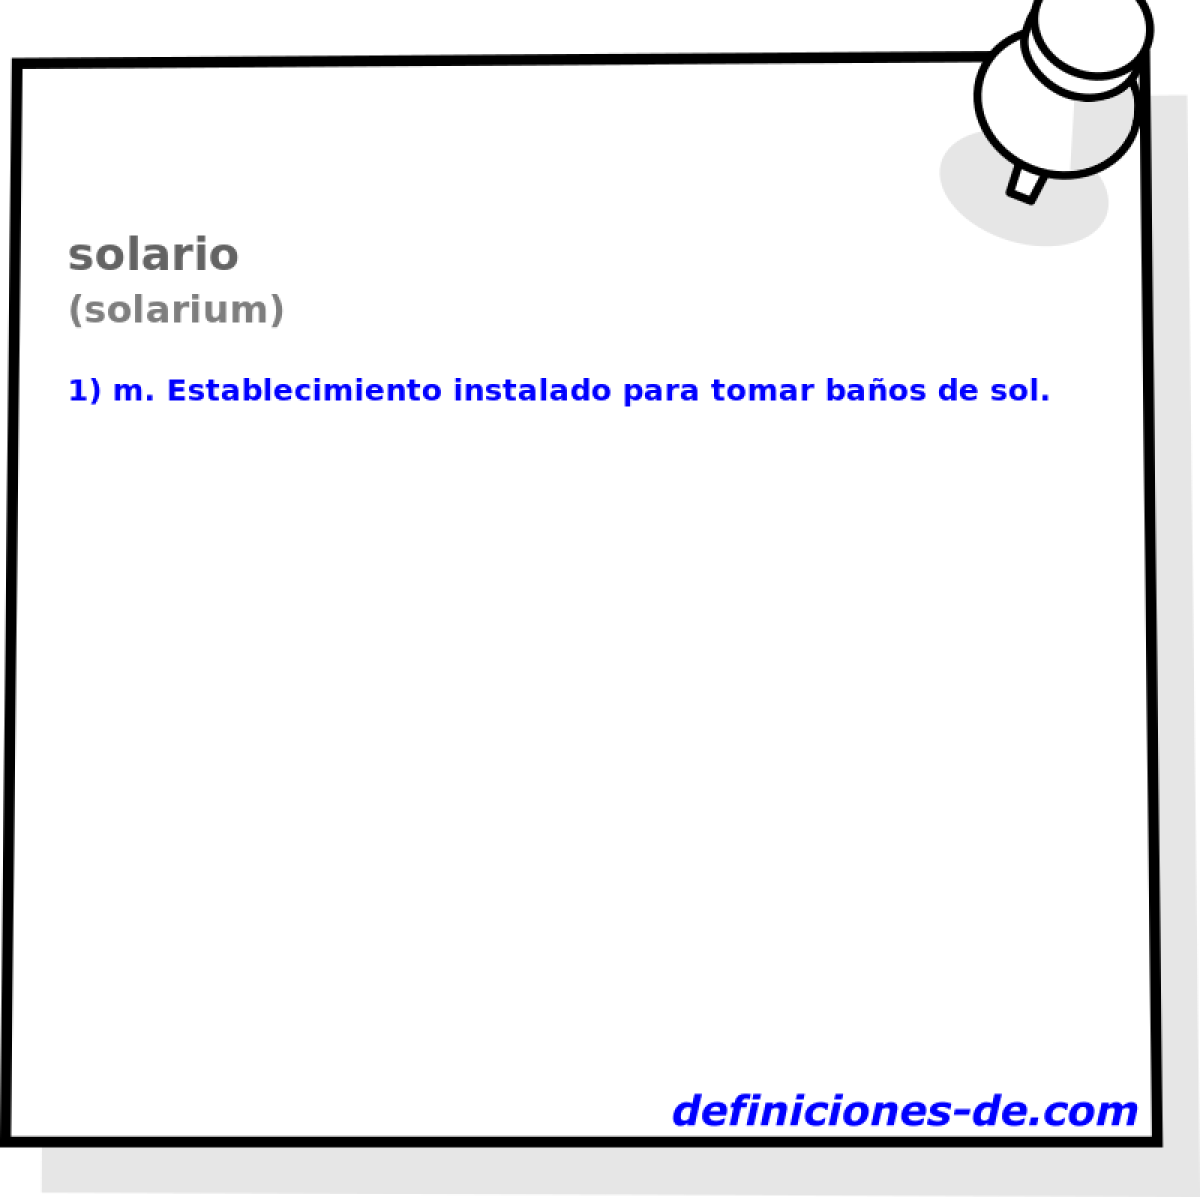 solario (solarium)